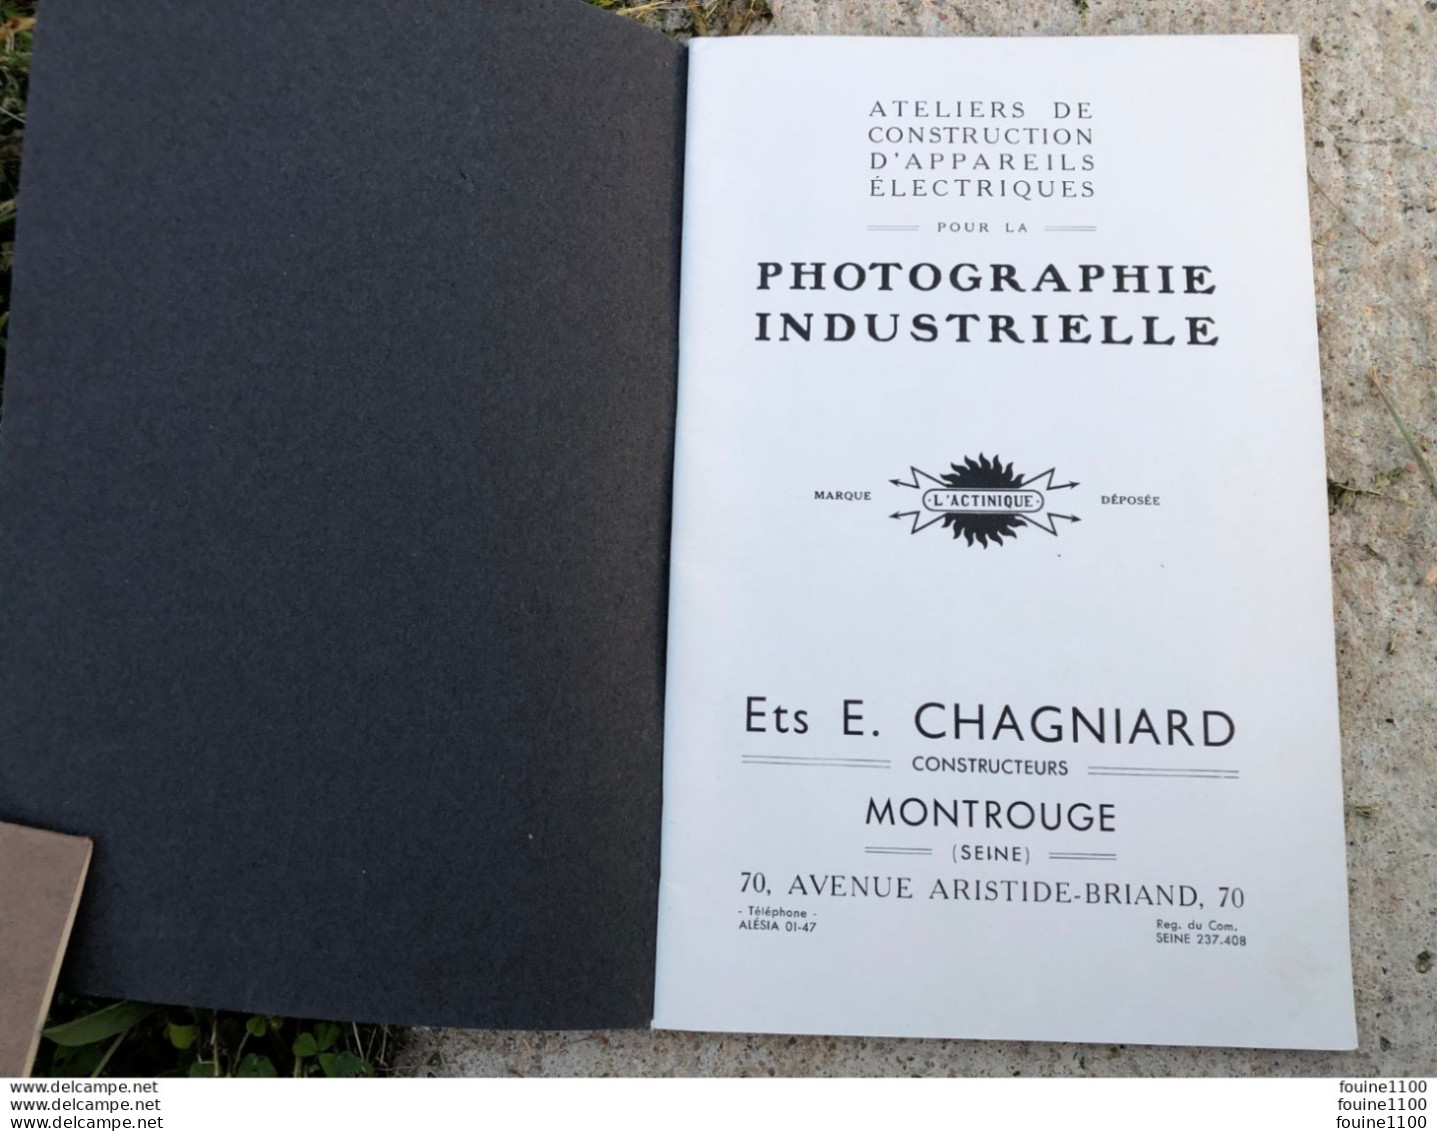 Catalogue L'ACTINIQUE Construction D'appareils électriques Pour Photographie Industrielle Ets E. Chagniard à MONTROUGE - Photographie